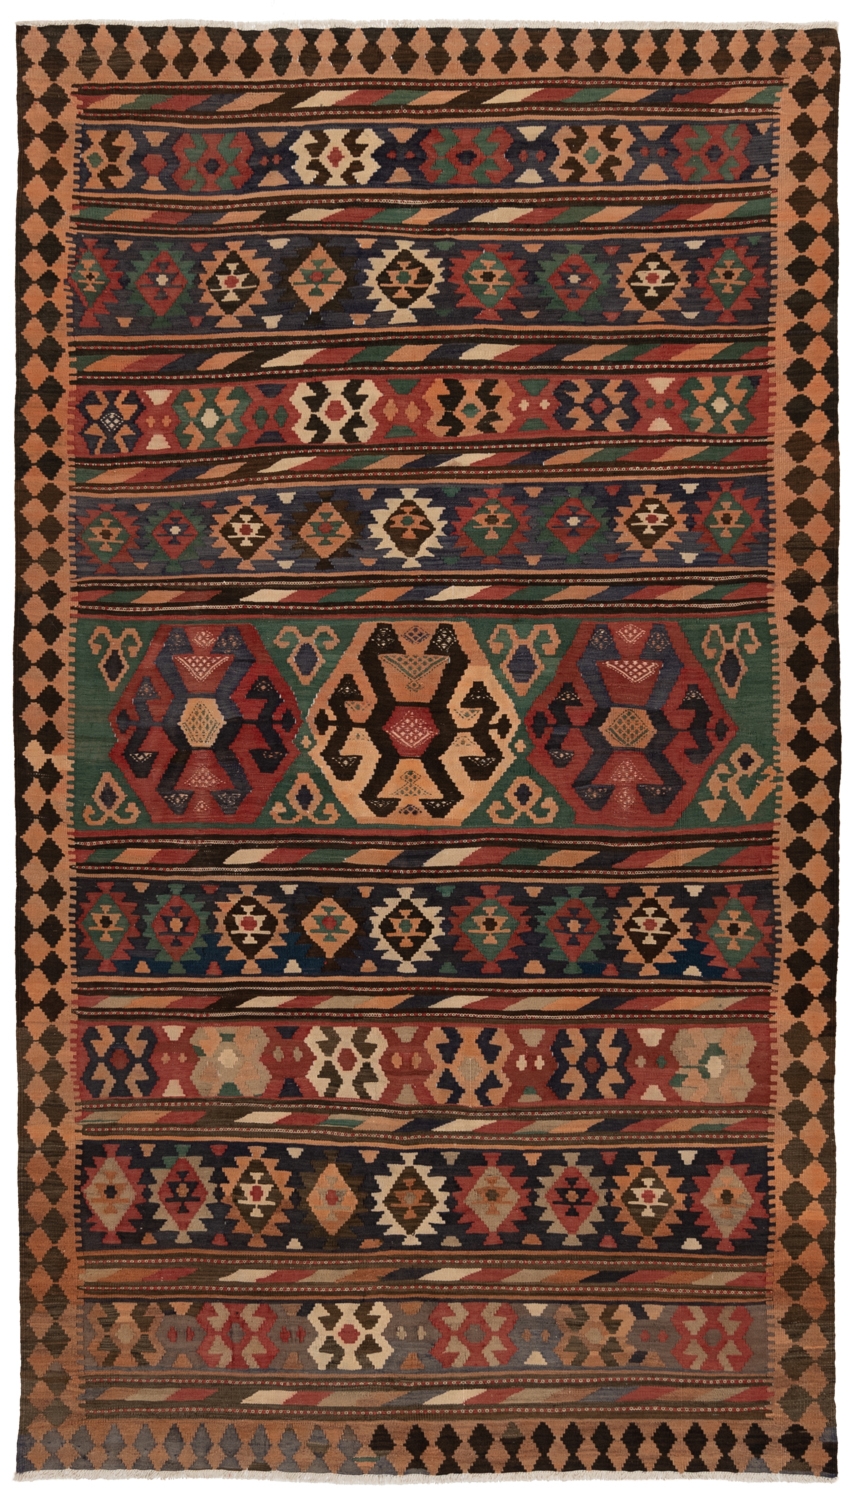 Persian Kilim Multicolor 308 x 174 cm